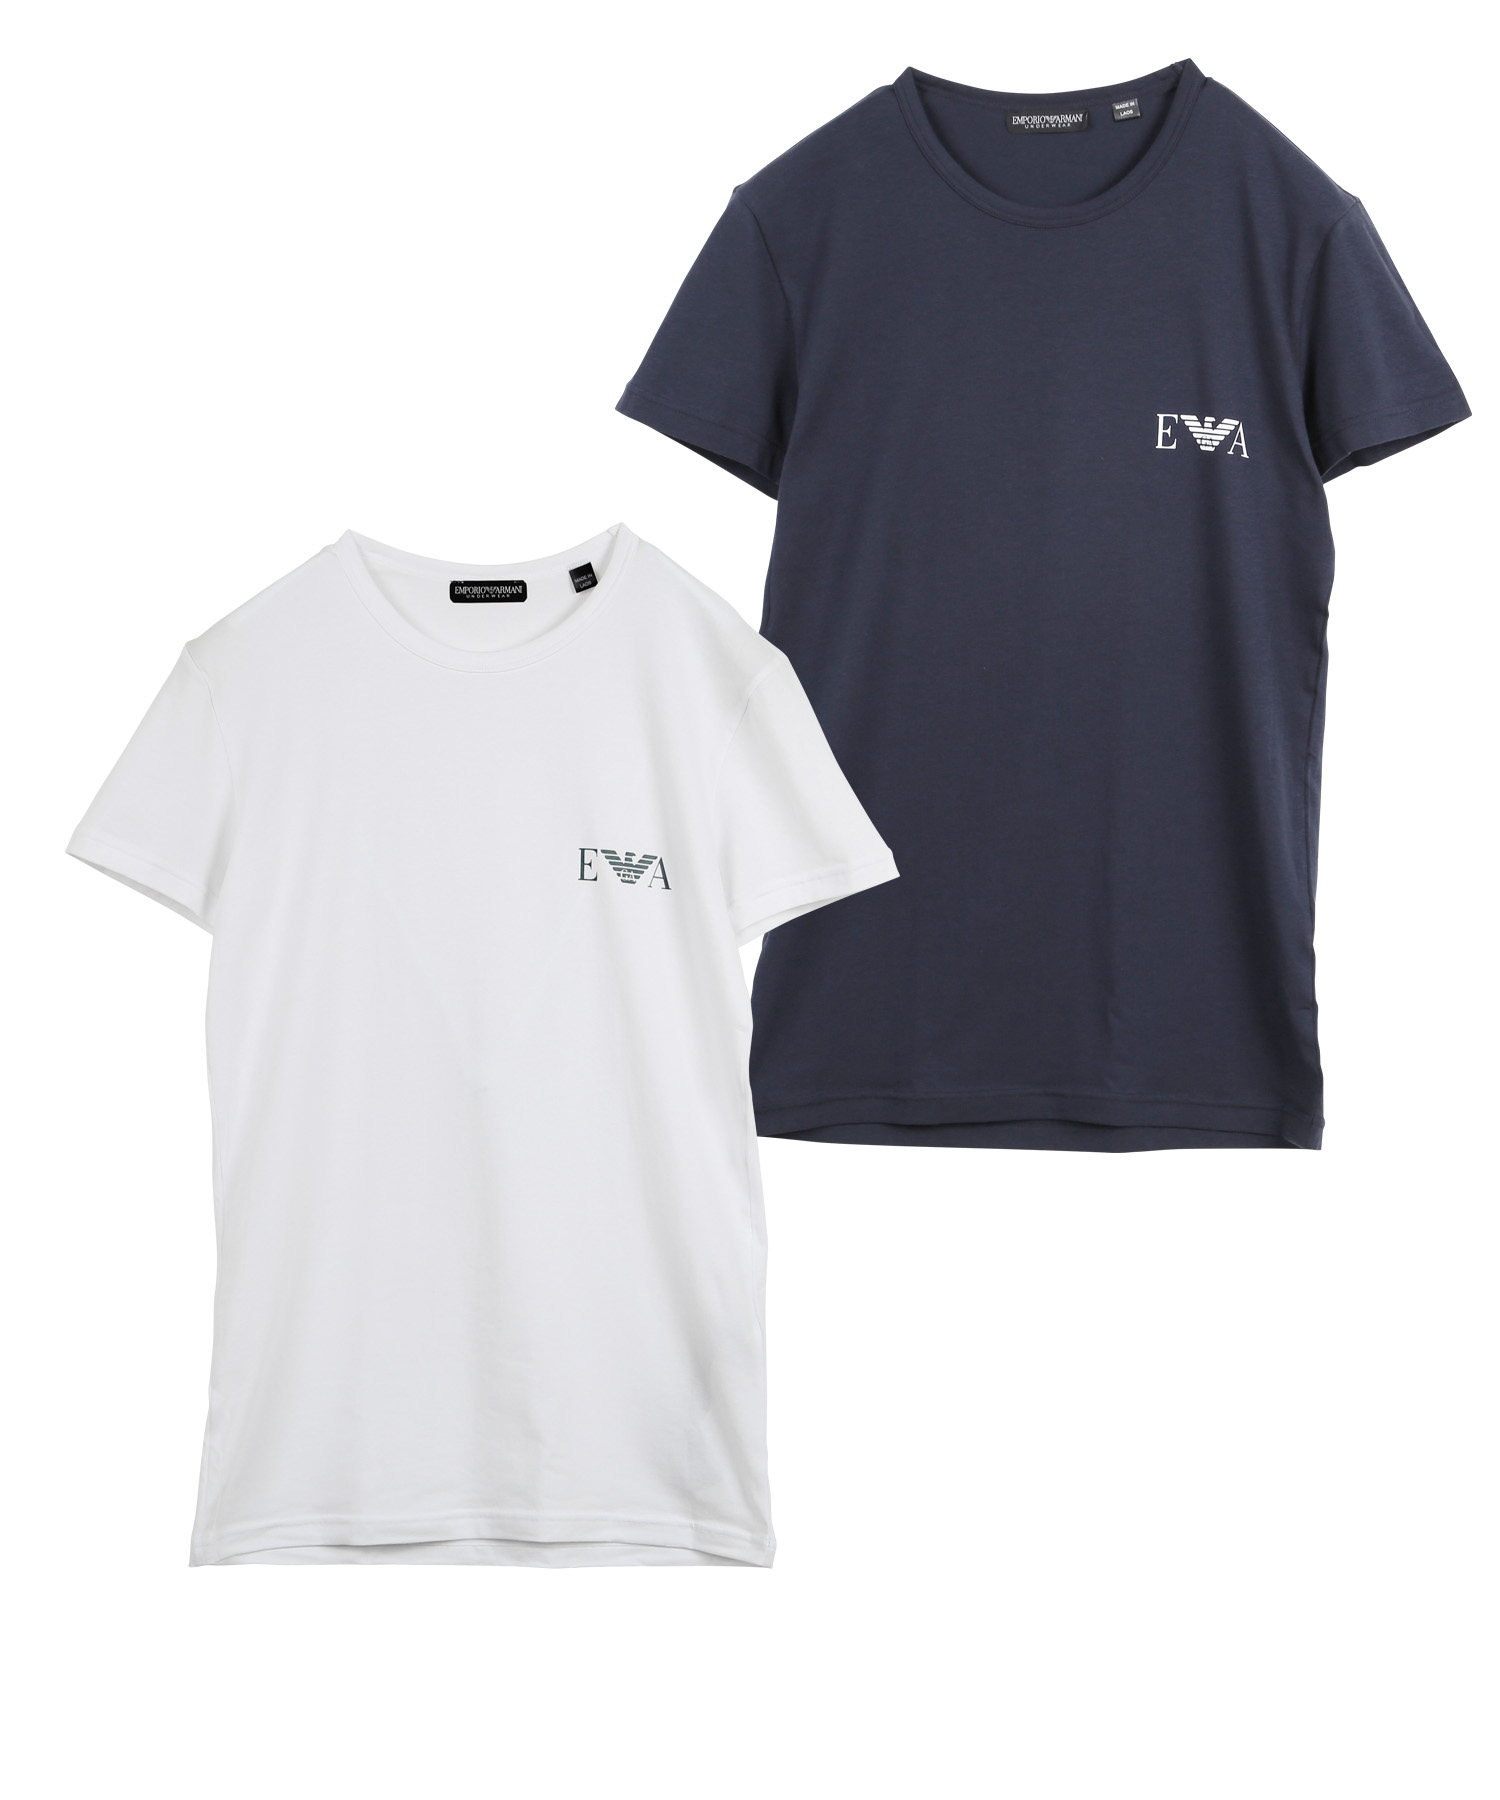 エンポリオ アルマーニ EMPORIO ARMANI Tシャツ 2枚セット メンズ 半袖 クルーネック 綿混 コットン ロゴ 高級 ハイブランド  プレゼント ギフト